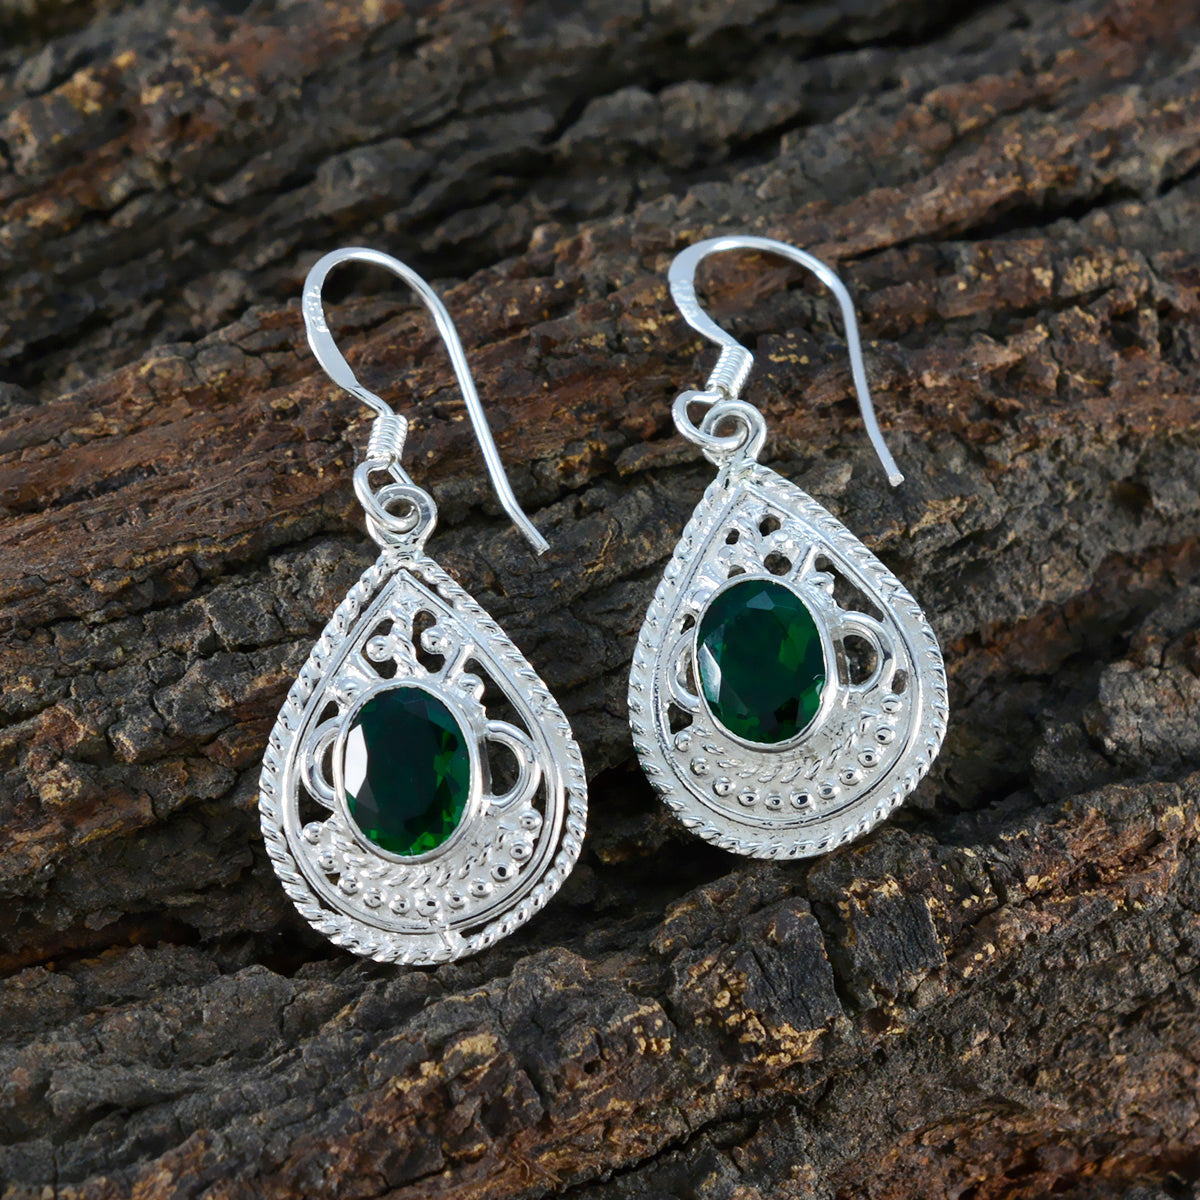 Riyo Fanciable Sterling Silver Earring For Femme Emerald CZ Earring Bezel Setting Green Earring Dangle Earring